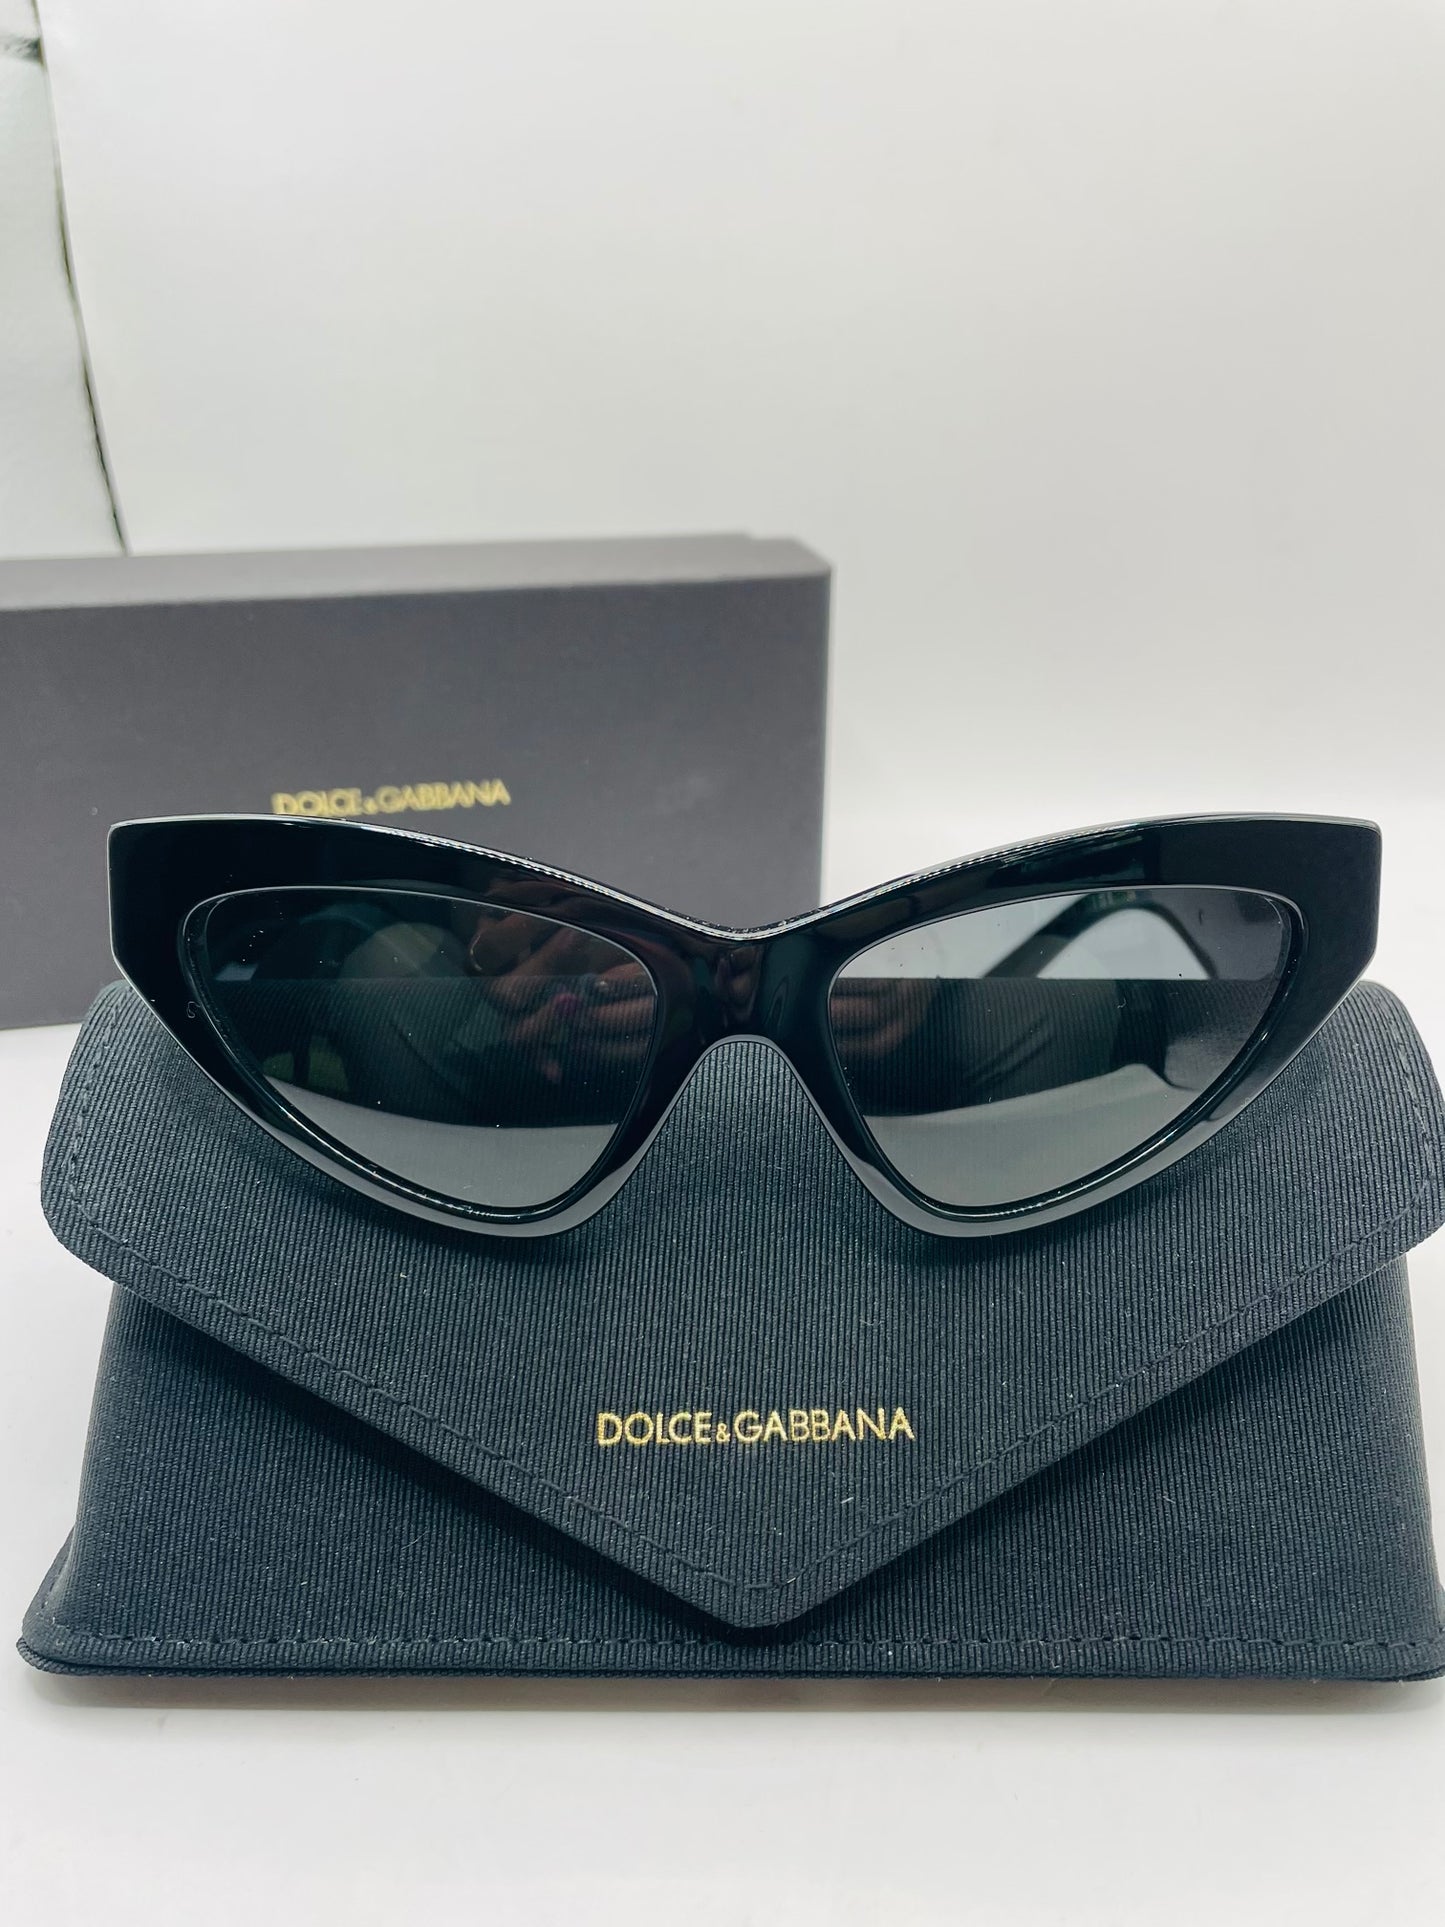 Dolce & Gabbana sunglass